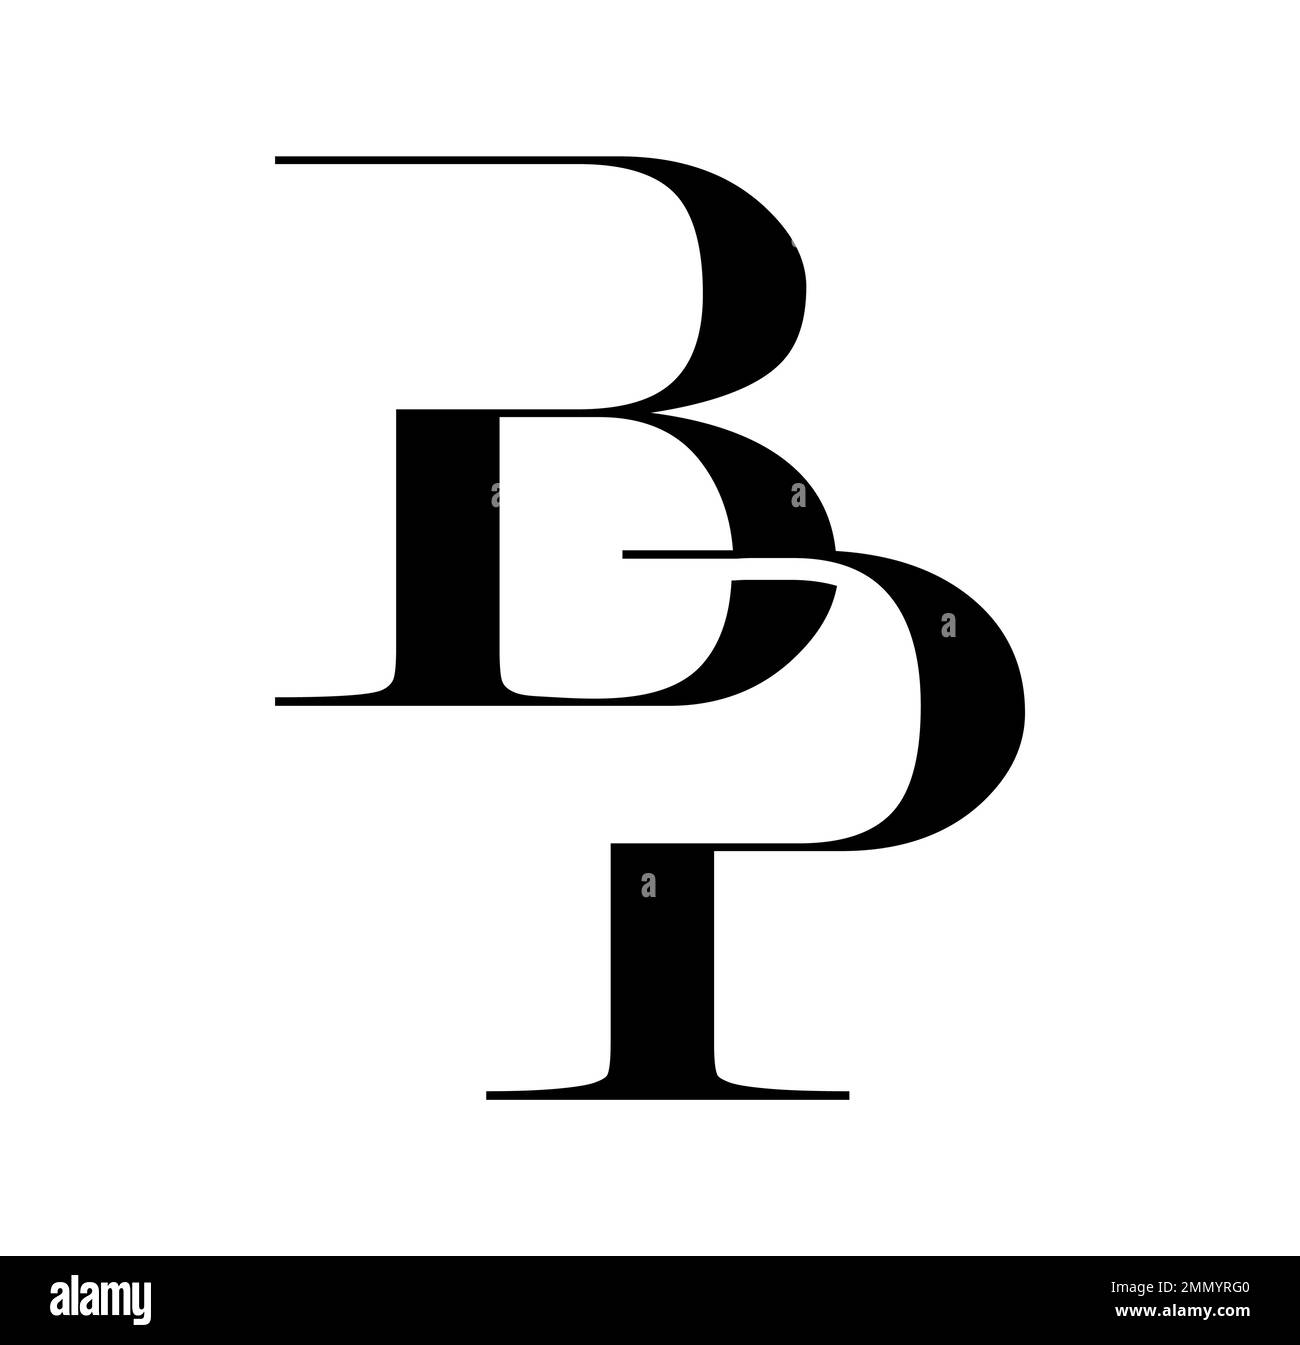 Illustration vectorielle isolée sur fond blanc de Monogram logo vecteur lettres initiales BP Illustration de Vecteur